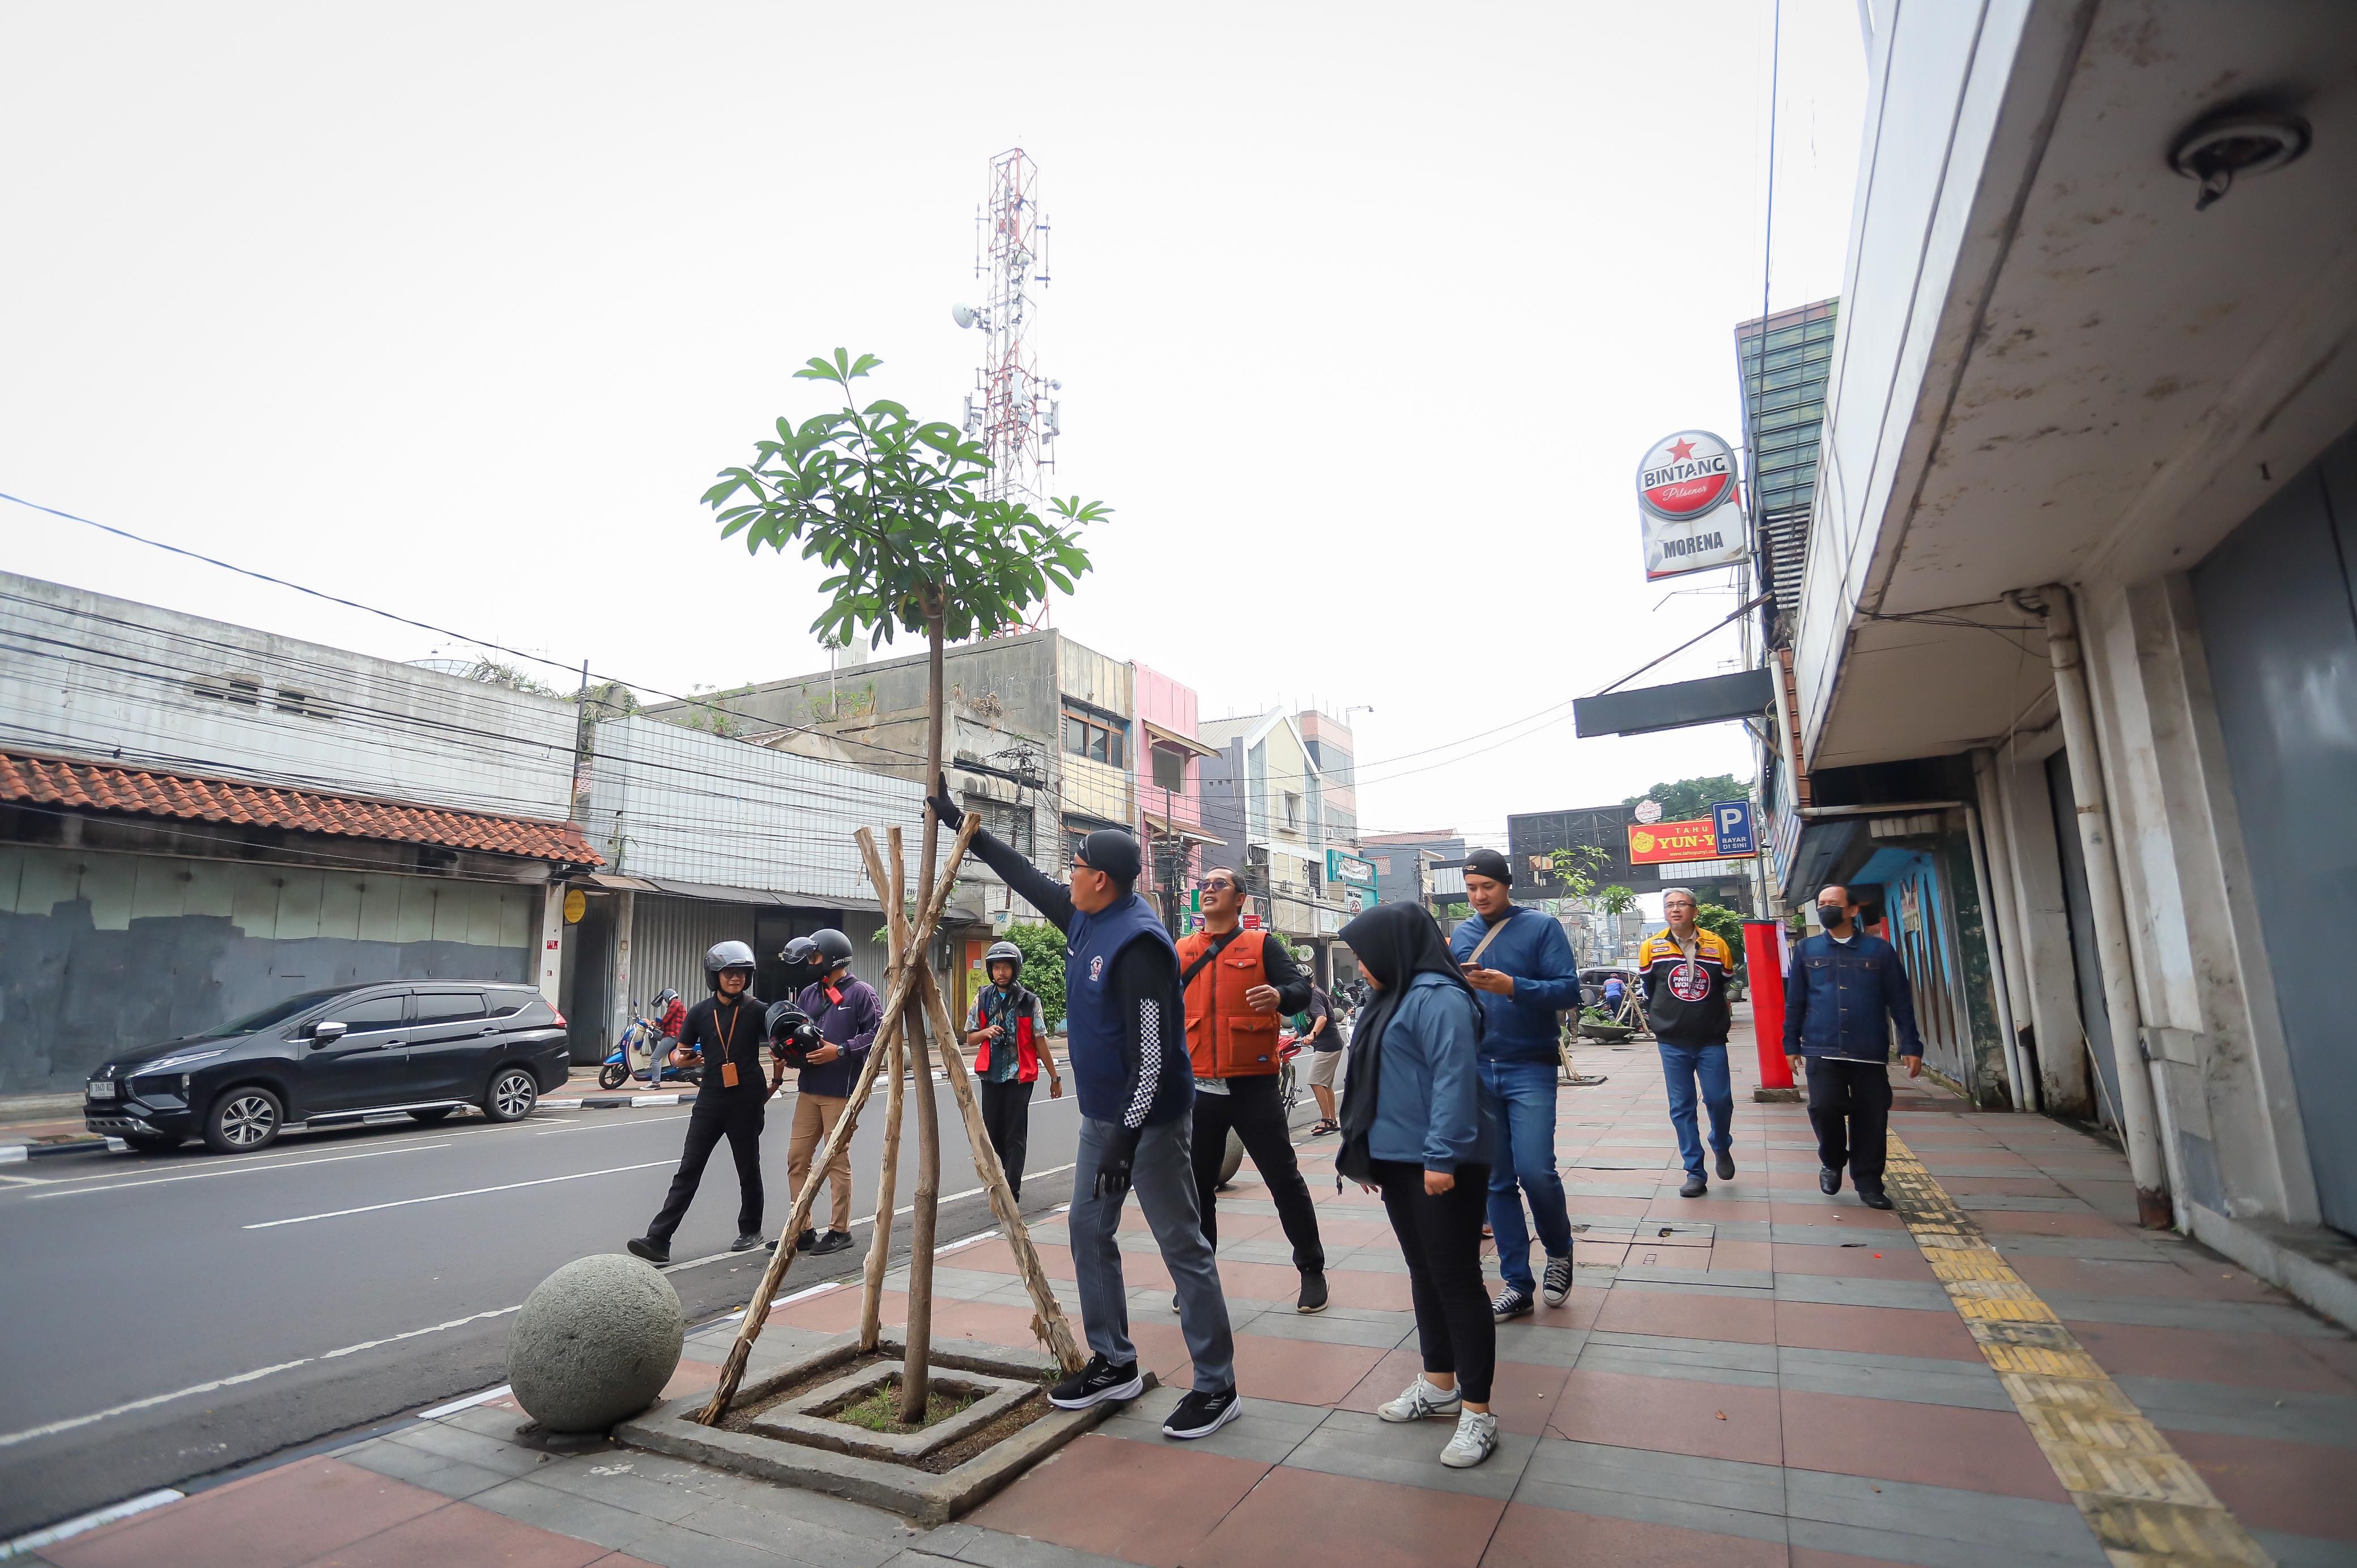  Pemkot Bandung Berkomitmen Hijaukan dan Tingkatkan Estetika Kota dengan Pohon Pale di Kawasan Jalan Sudirman